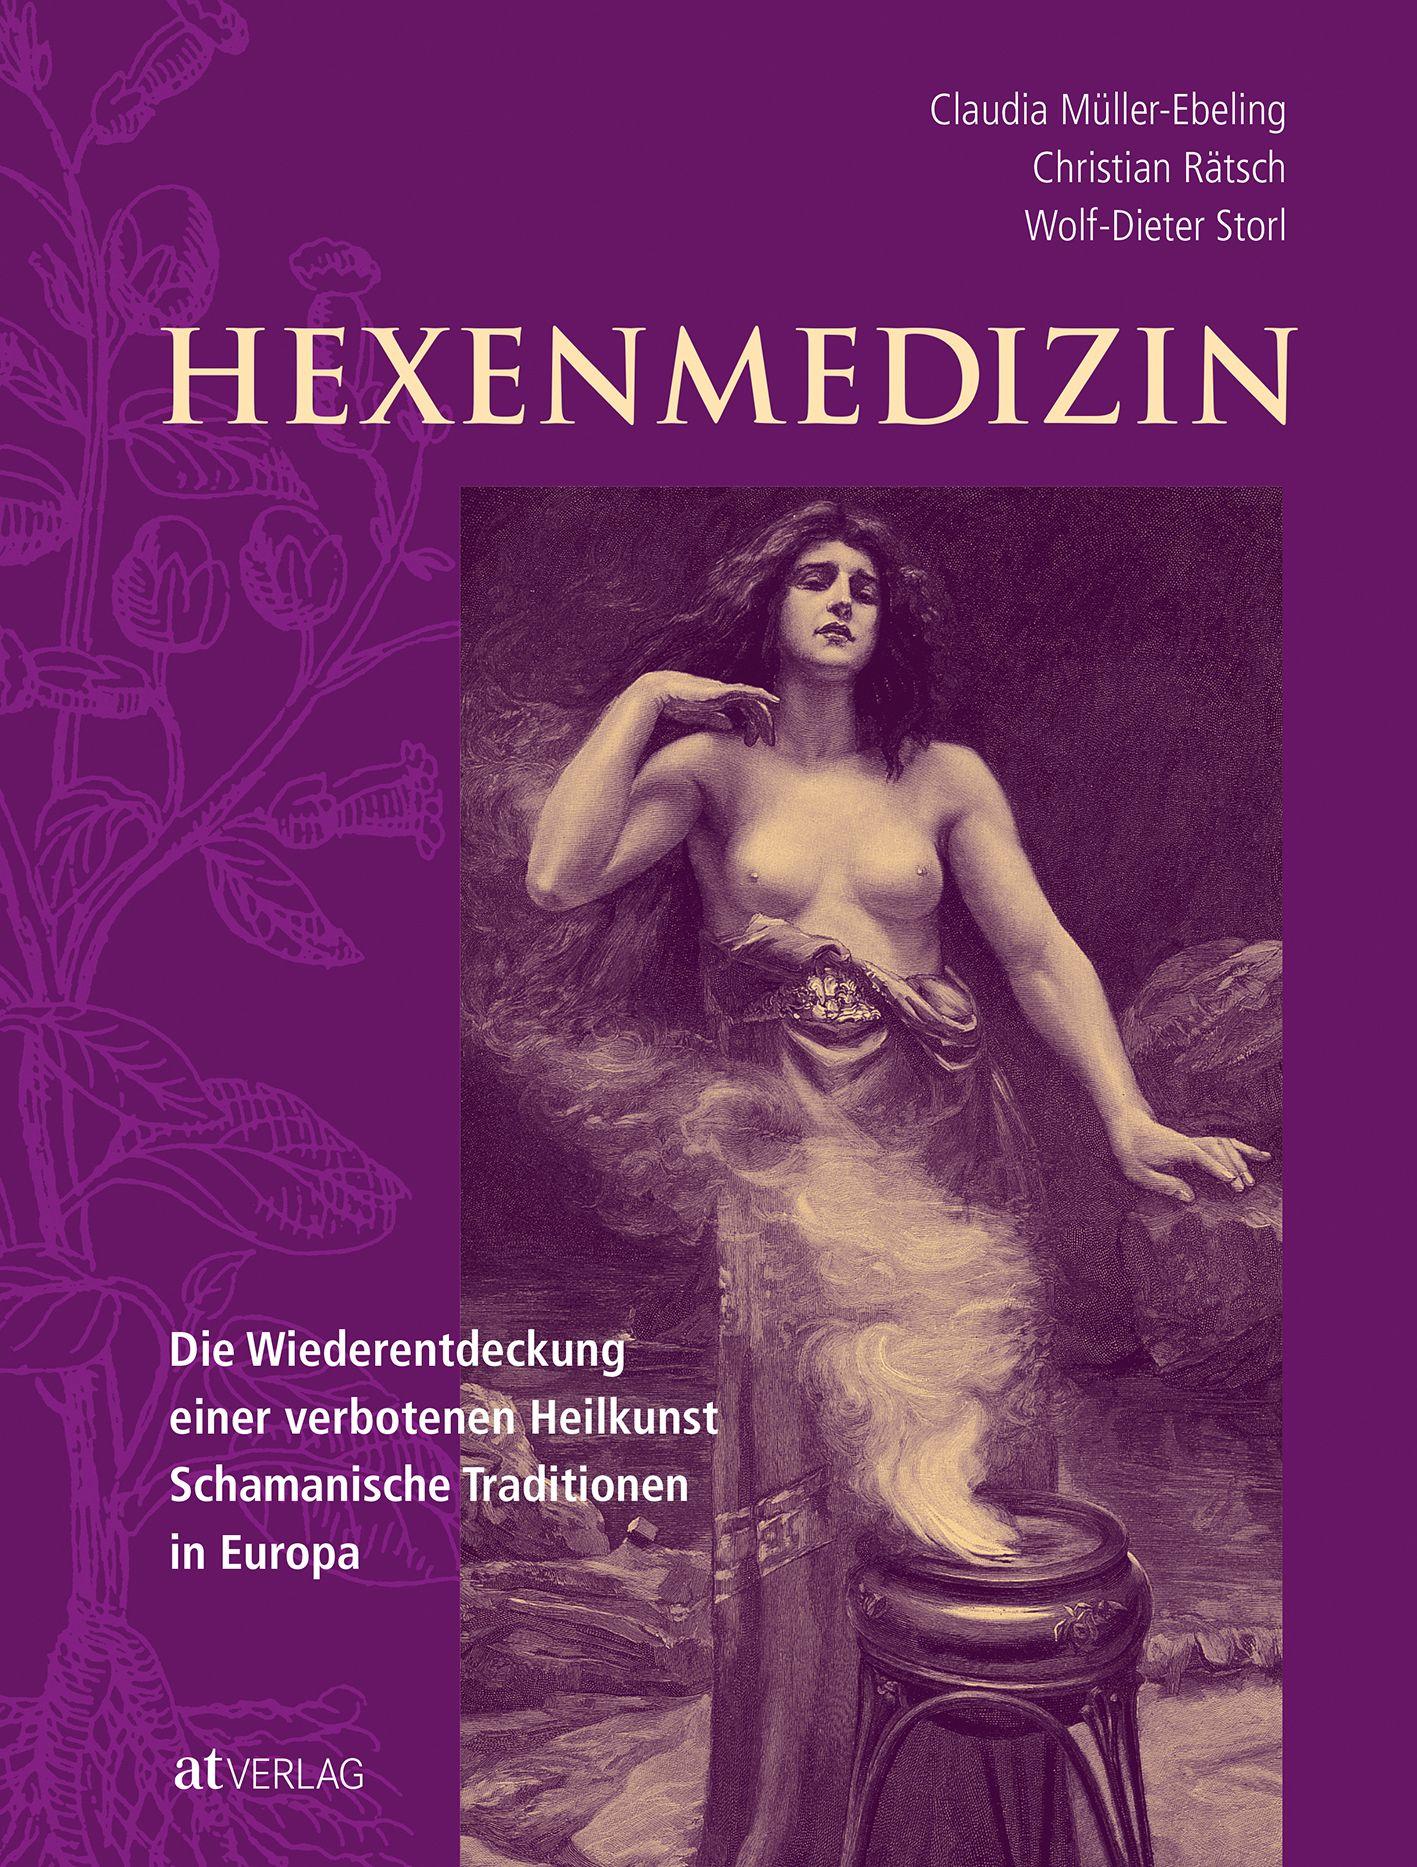 Hexenmedizin Die Wiederentdeckung einer verbotenen Heilkunst, schamanische Traditionen in Europa